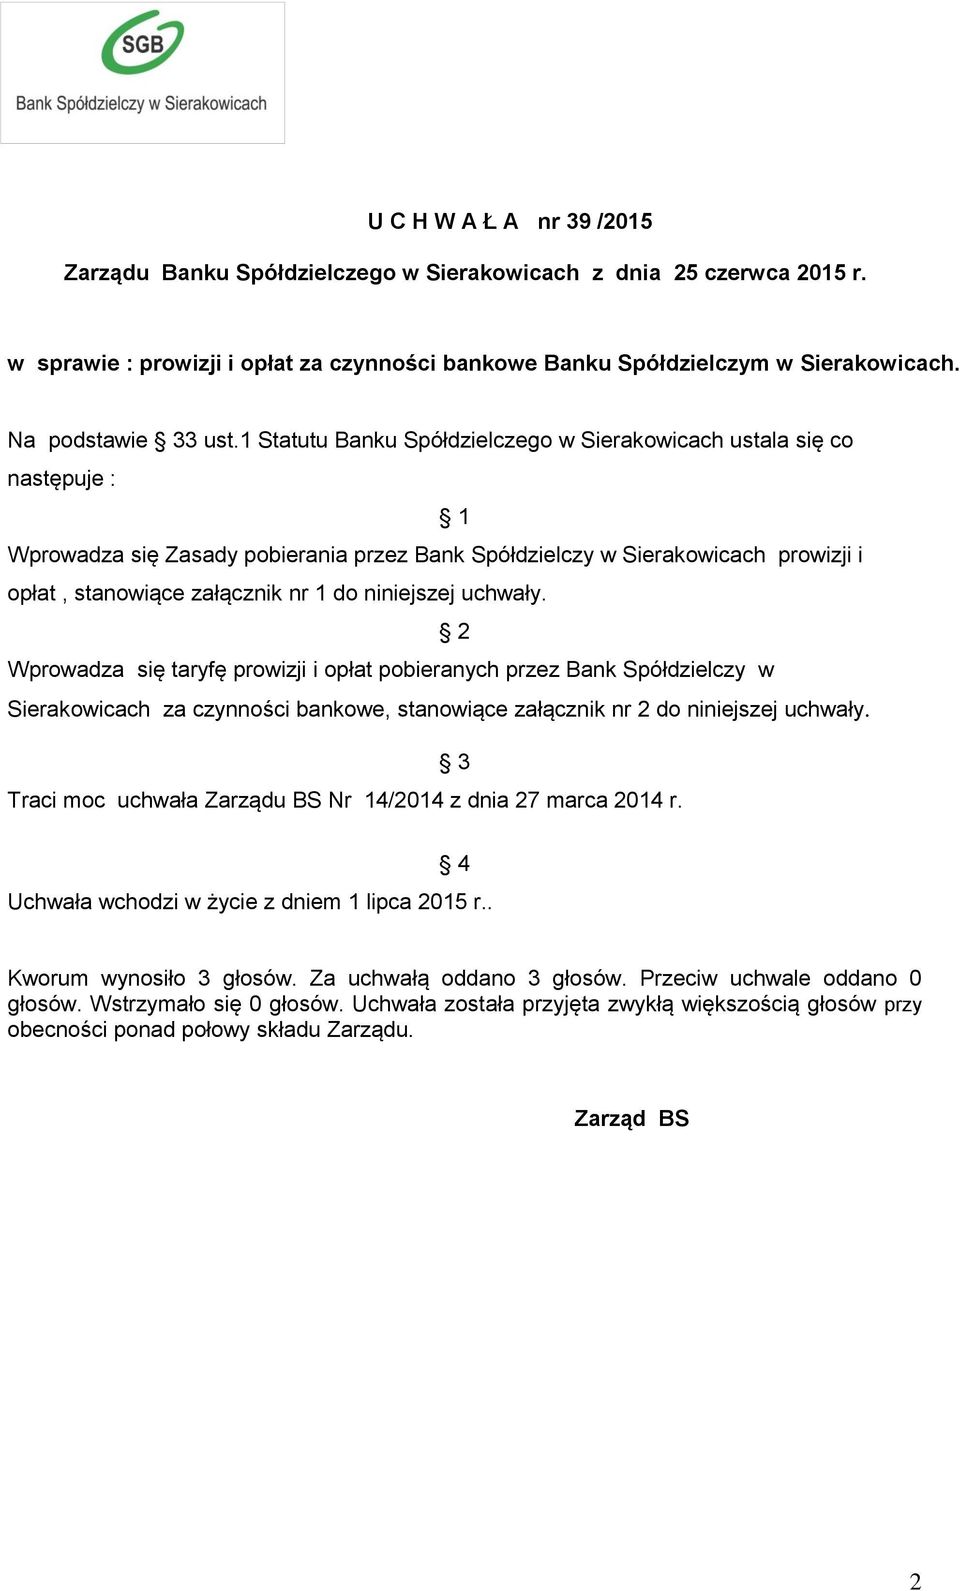 1 Statutu Banku Spółdzielczego w Sierakowicach ustala się co następuje : 1 Wprowadza się Zasady pobierania przez Bank Spółdzielczy w Sierakowicach prowizji i opłat, stanowiące załącznik nr 1 do